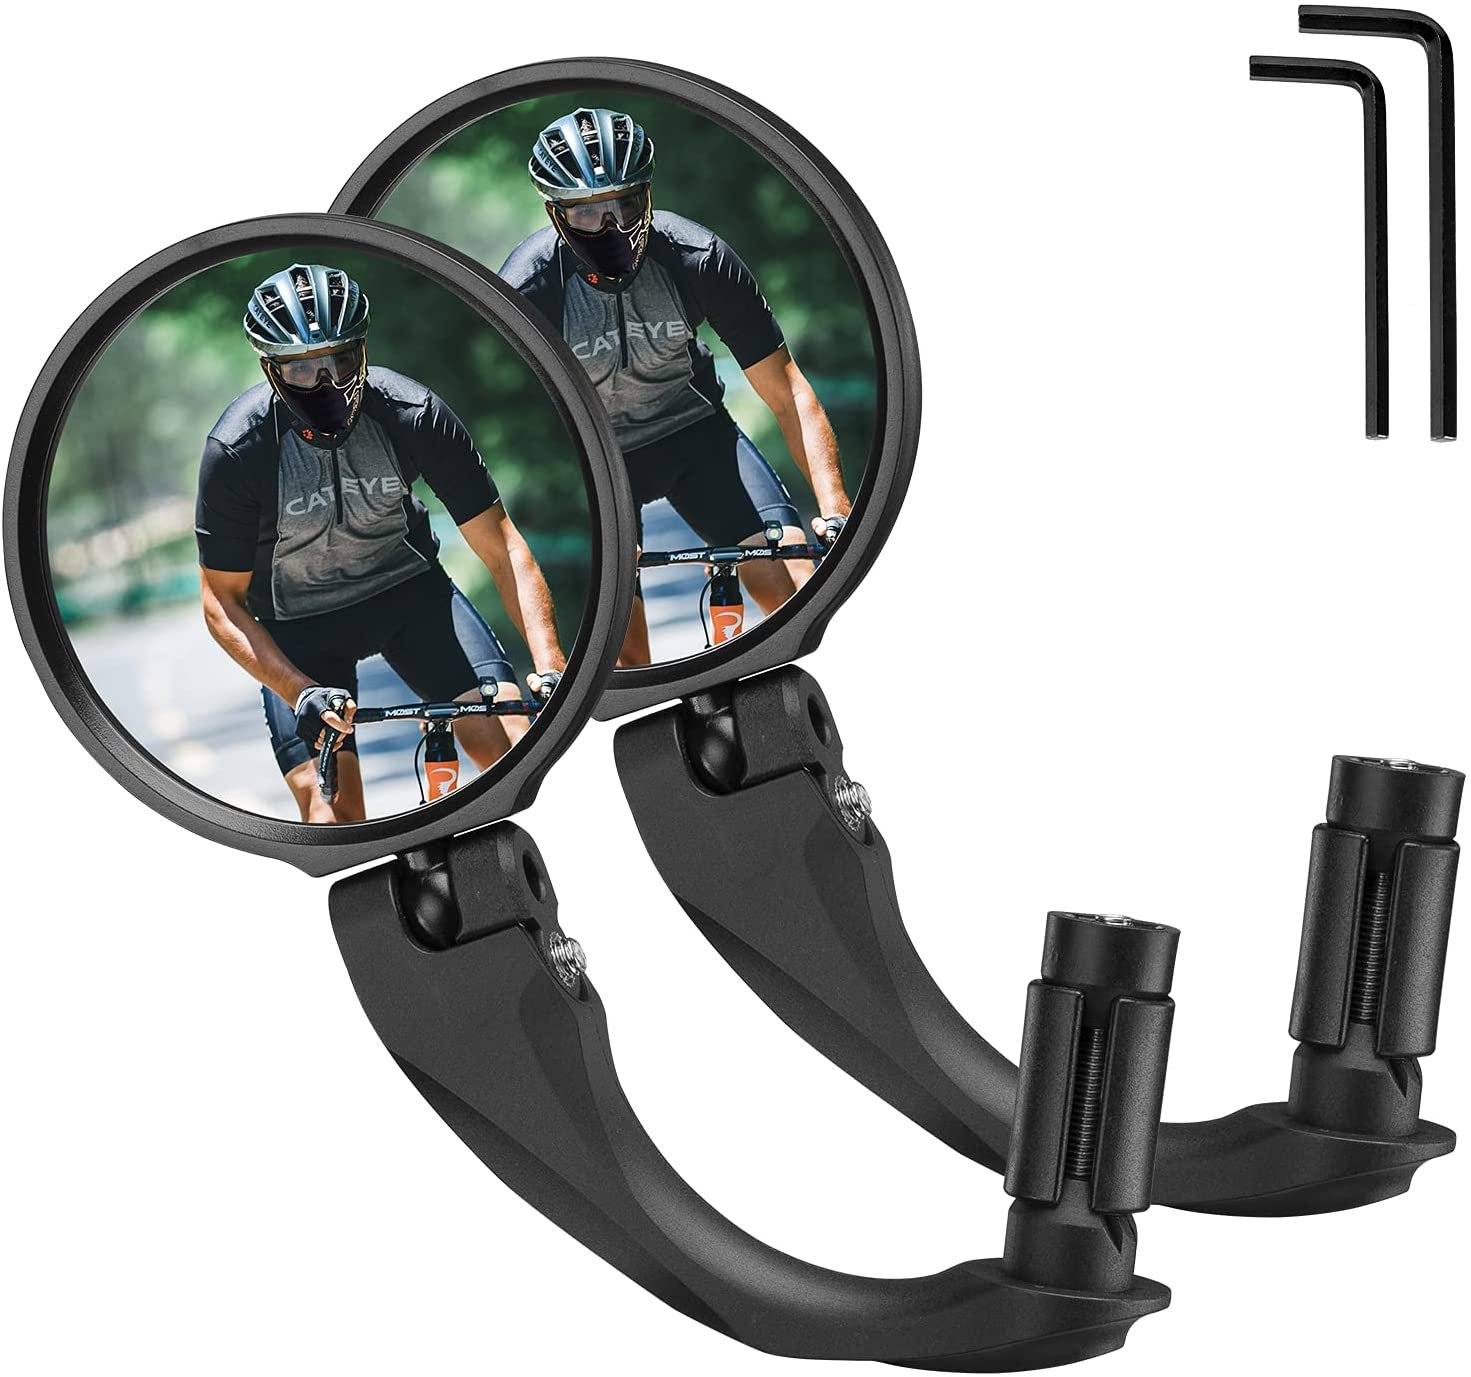 Зеркало велосипедное RockBros, акриловое, заднего вида, круглое 7,5 см, длина ручки 9 см, черный, FK-272 камера заднего вида interpower ip 920